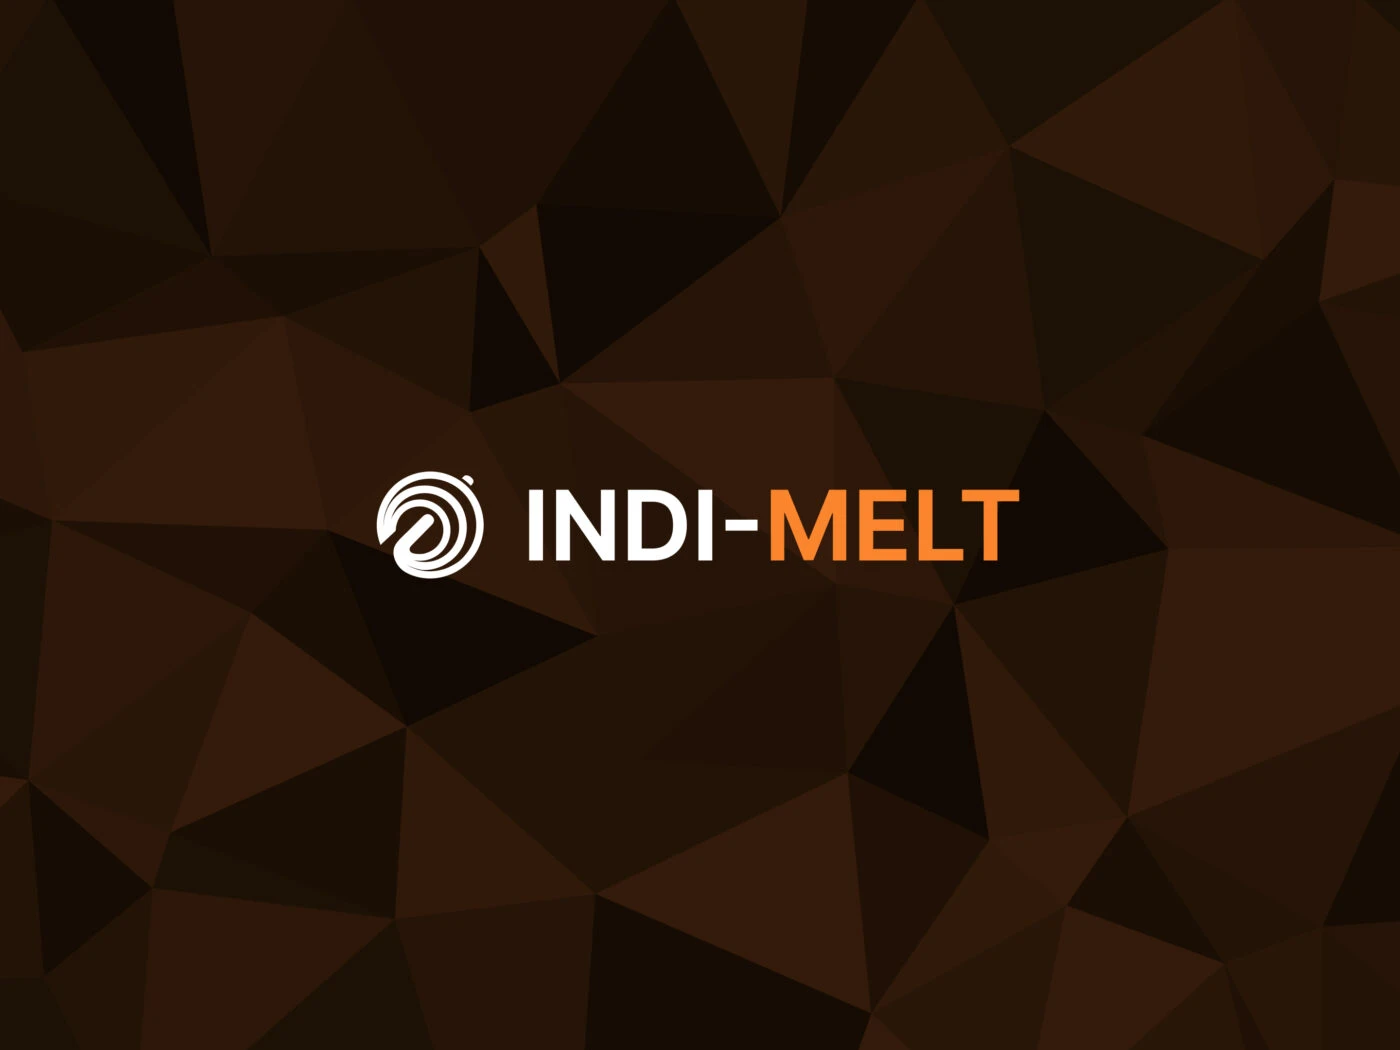 Logo von INDI-MELT. Das Logo besteht aus einem abstrakten Schmelzofen, der in einem modernen Stil dargestellt ist. Die Farben sind warm und spiegeln die Wärme des Schmelzprozesses wider.